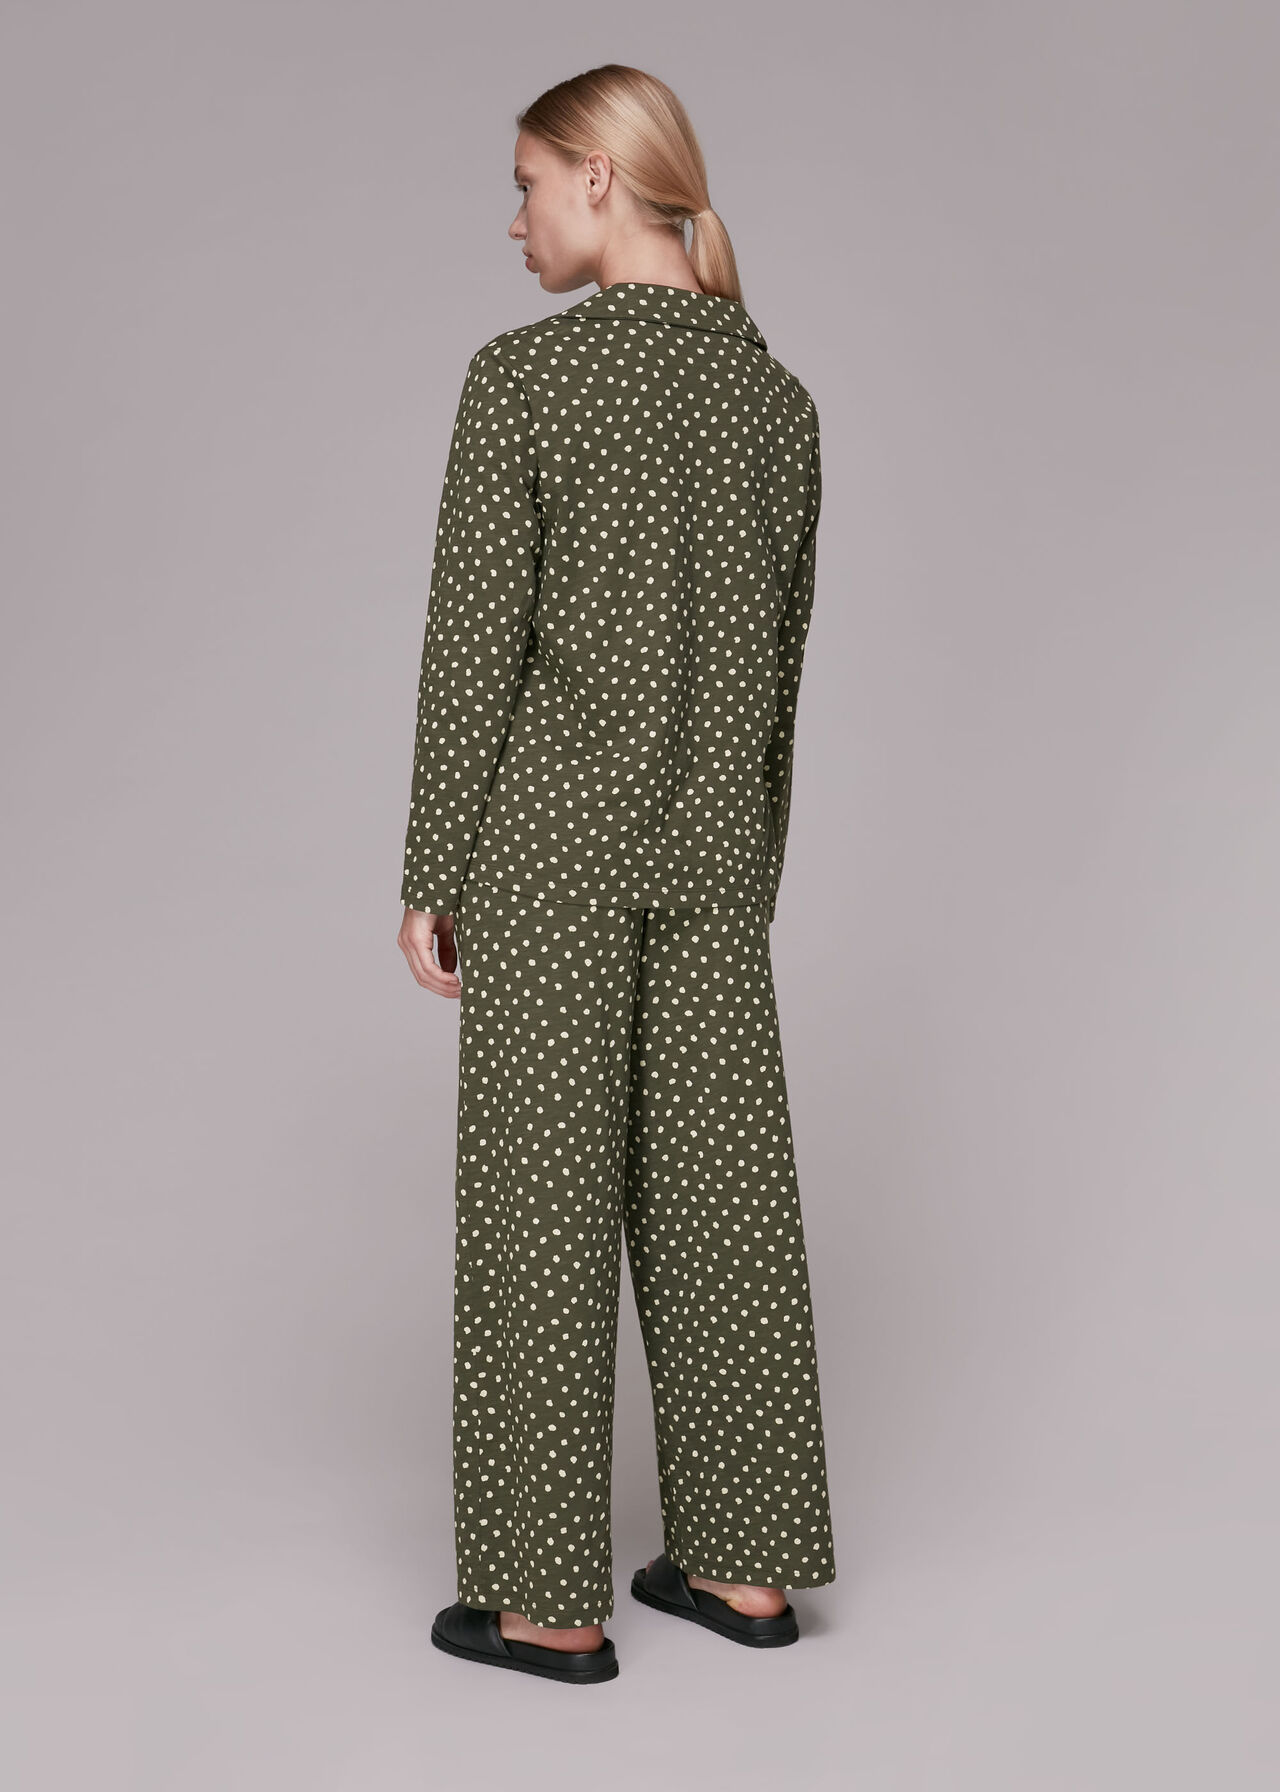 Irregular Spot Print Pyjamas